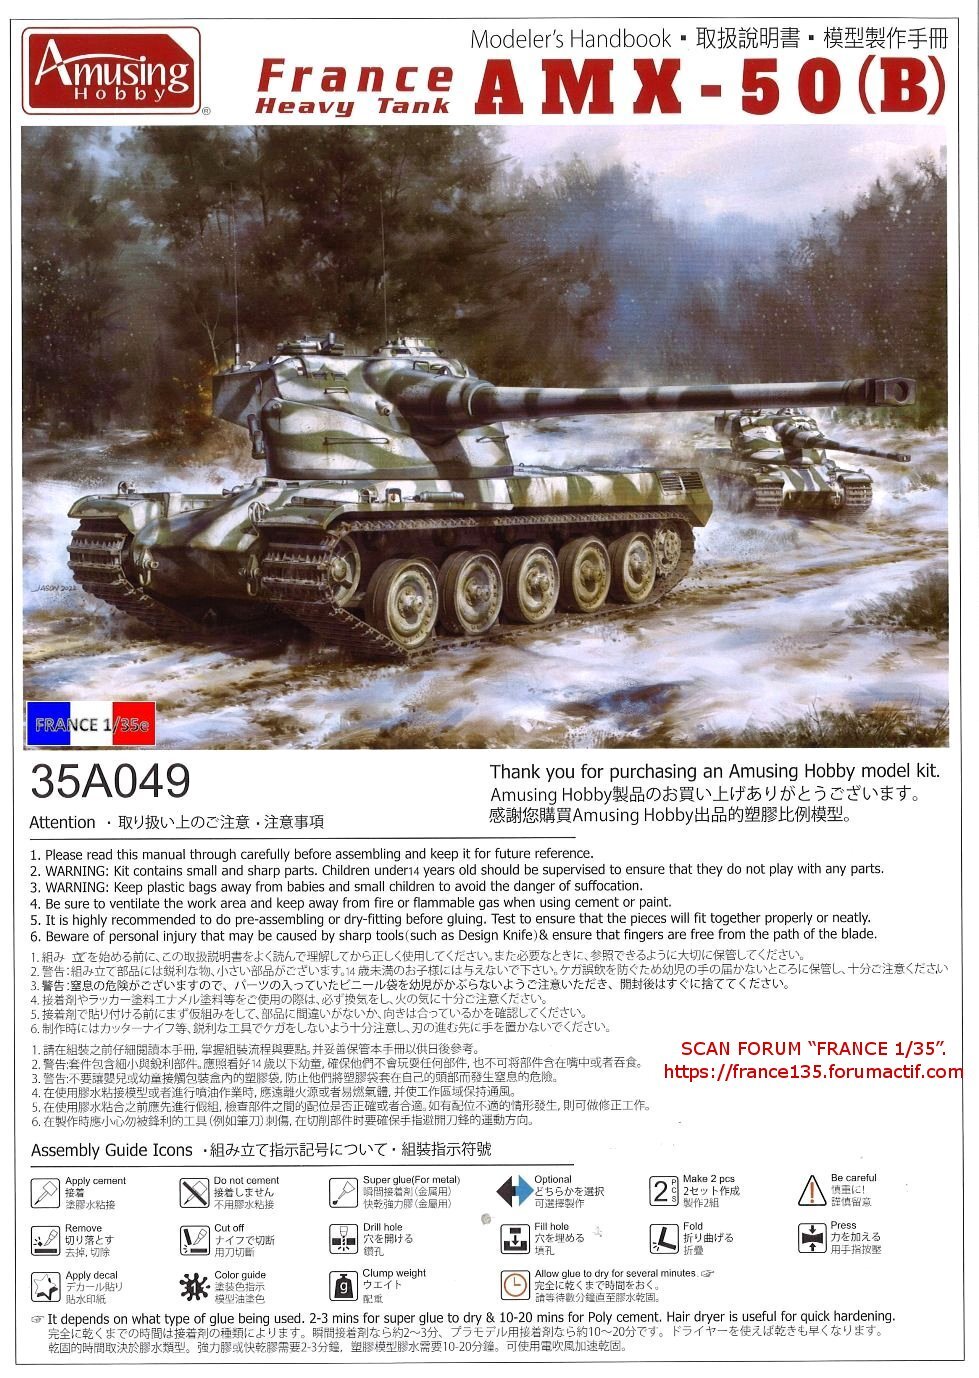 AMX 50B, France, heavy tank. Amusing-Hobby, 1/35, ref 35A049. Plastique injecté et photodécoupe. 35to